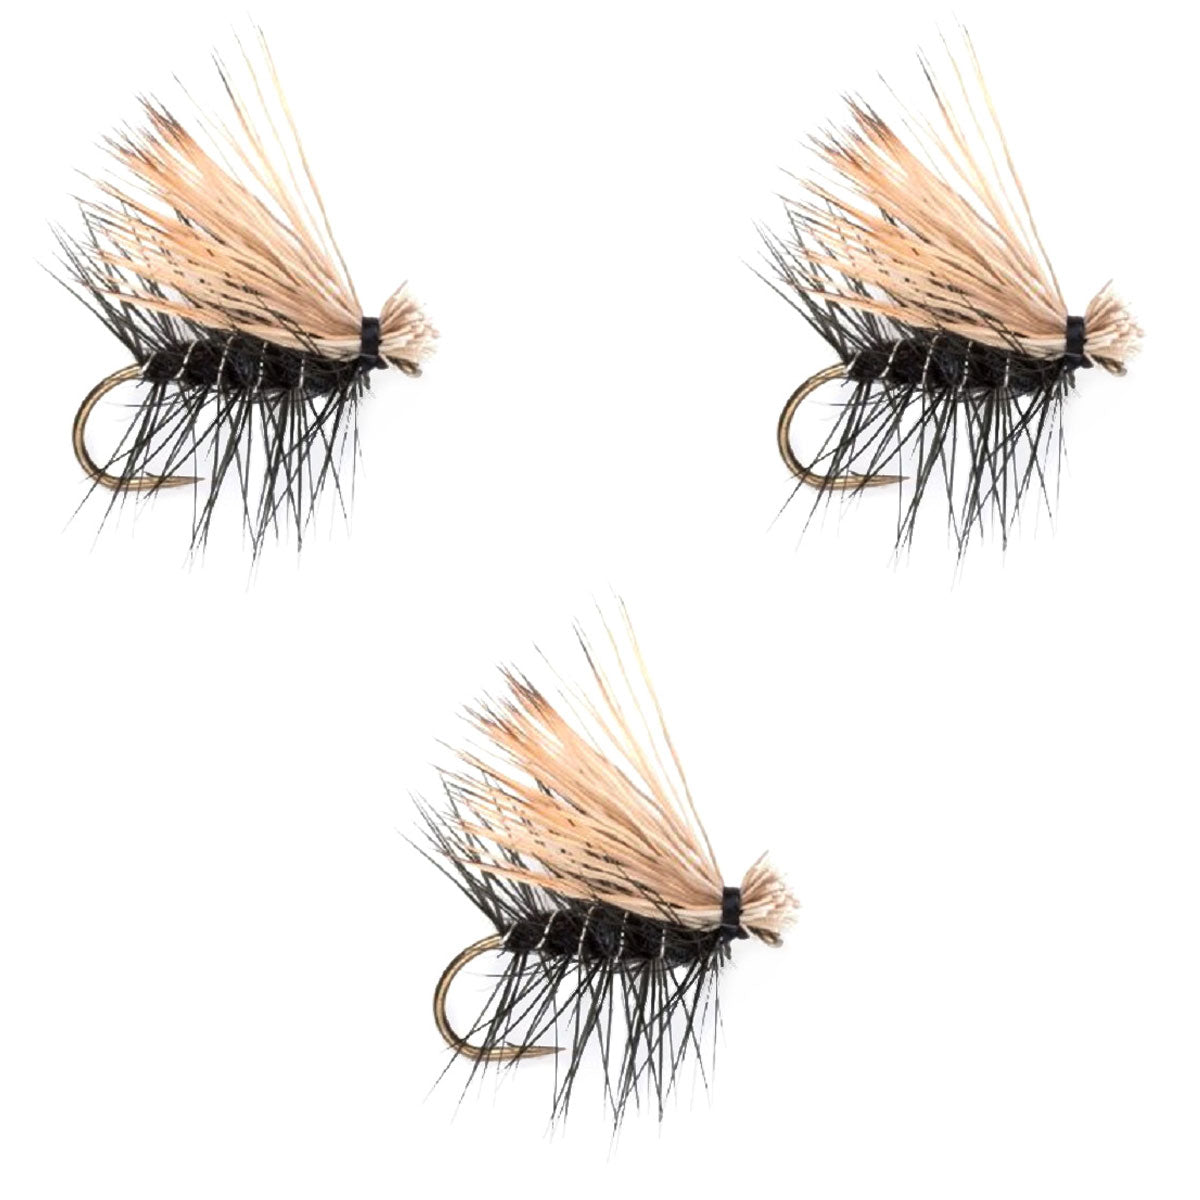 Paquete de 3 moscas secas para trucha Caddis Classic de pelo de alce negro, tamaño 14